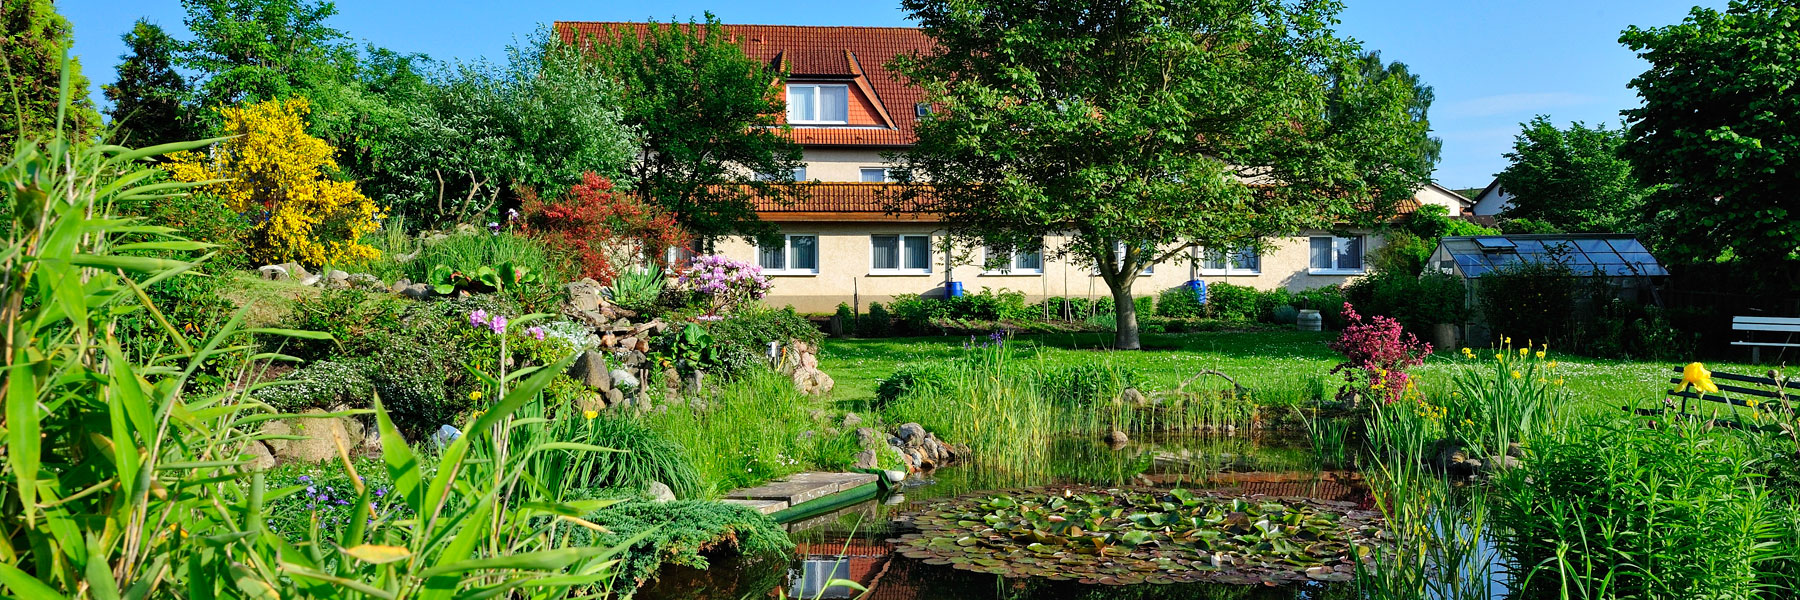 Gartenanlage - Gasthaus zum Rethberg